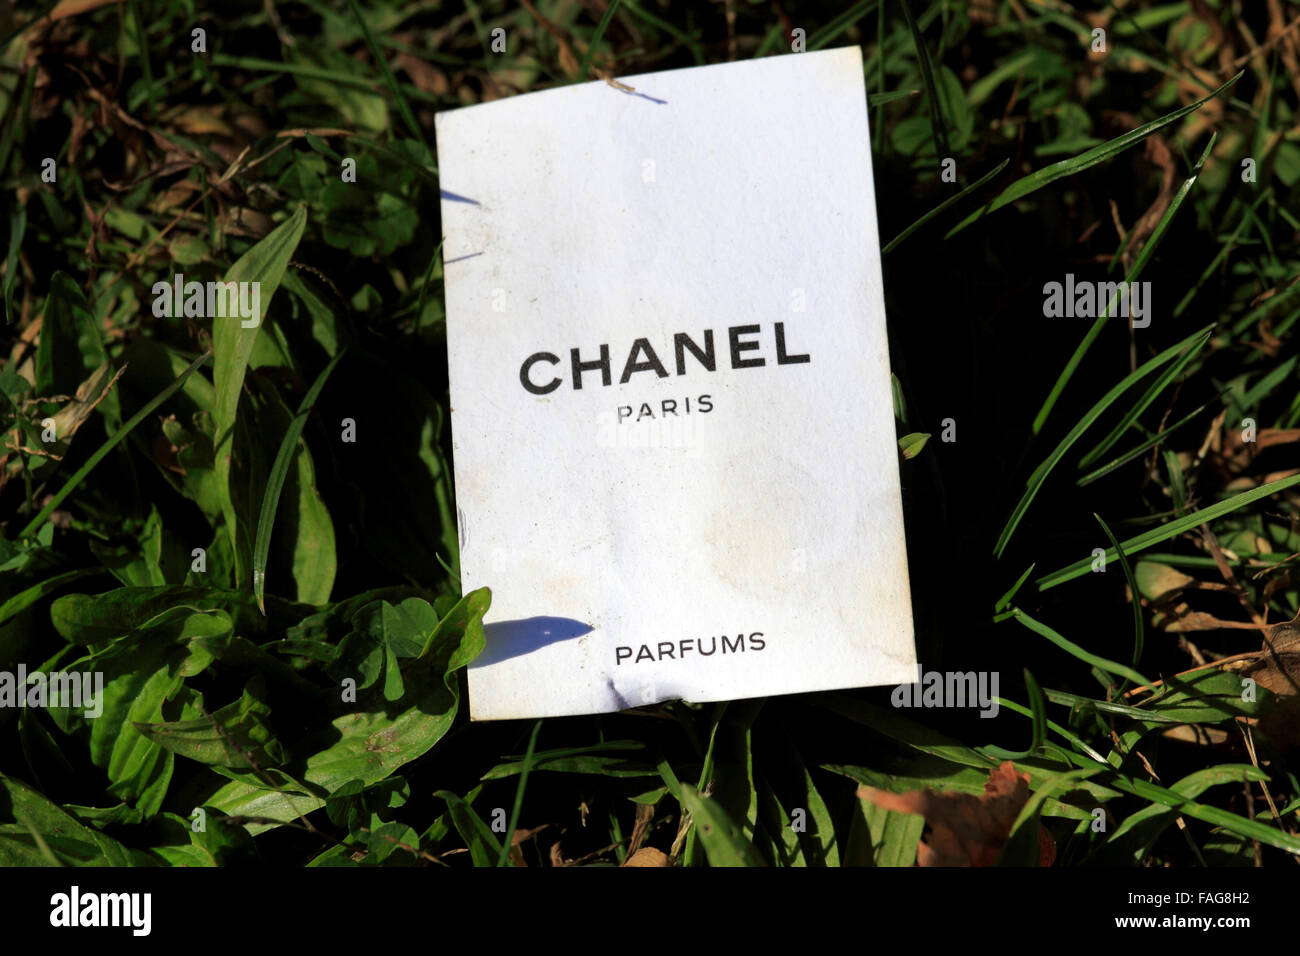  Chanel Beige EDT Mini Vial Spray : Eau De Toilettes